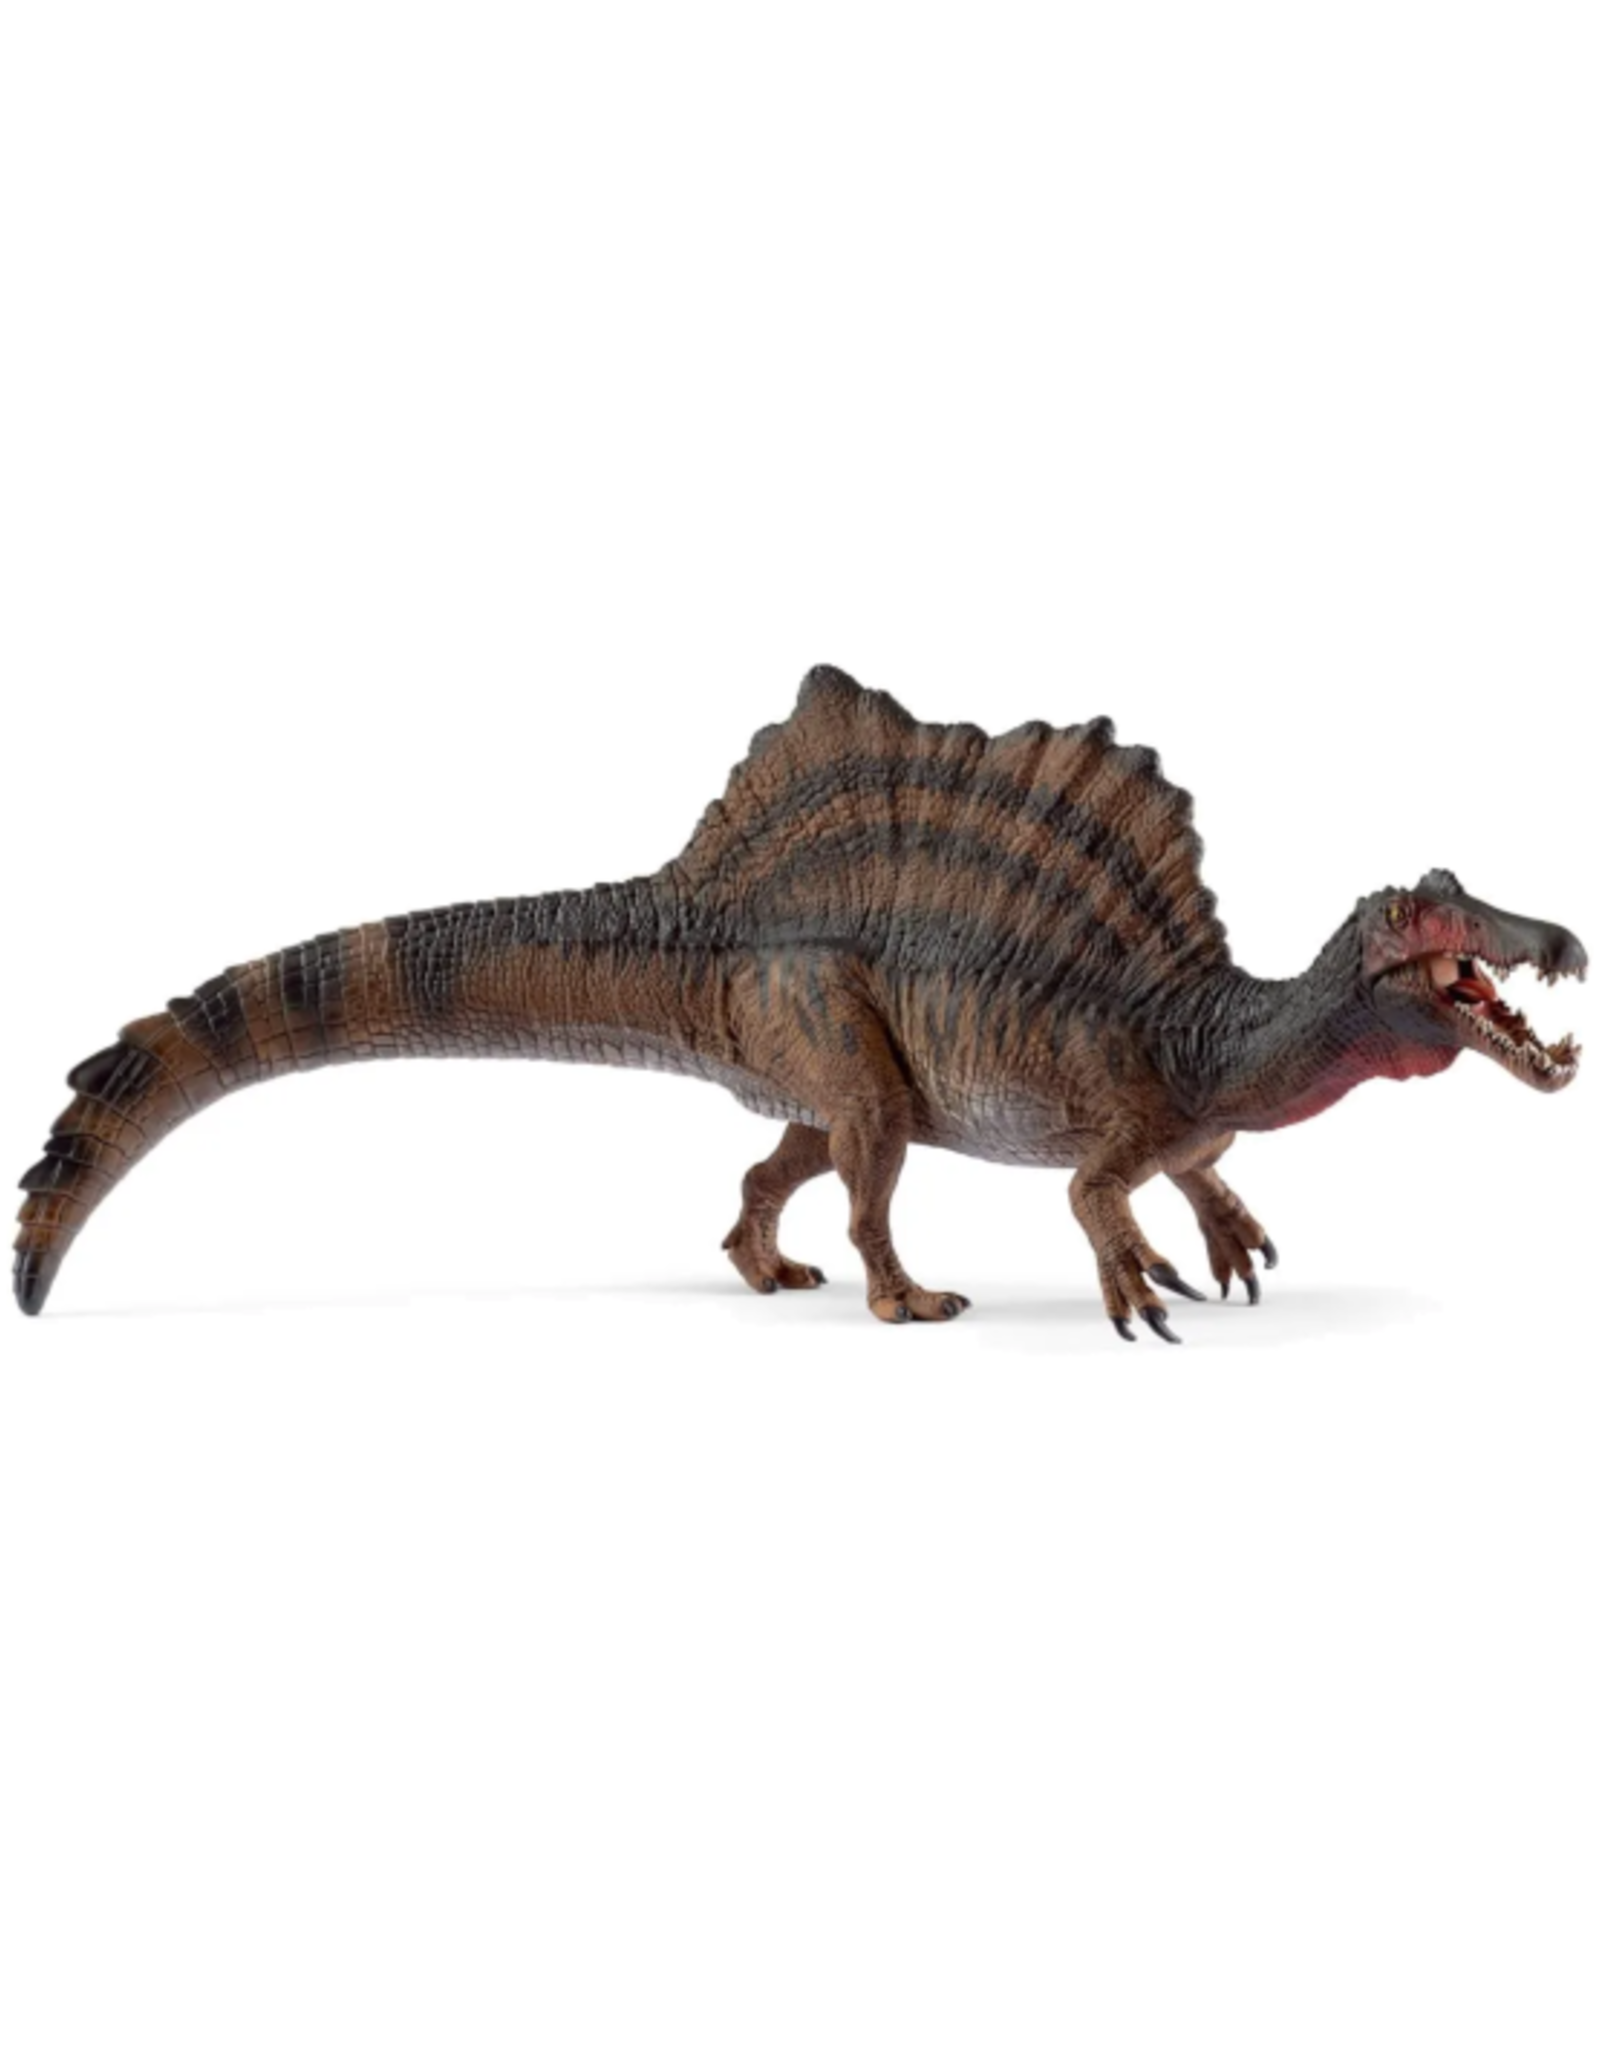 Schleich Schleich - Dinosaur - 15009 - Spinosaurus